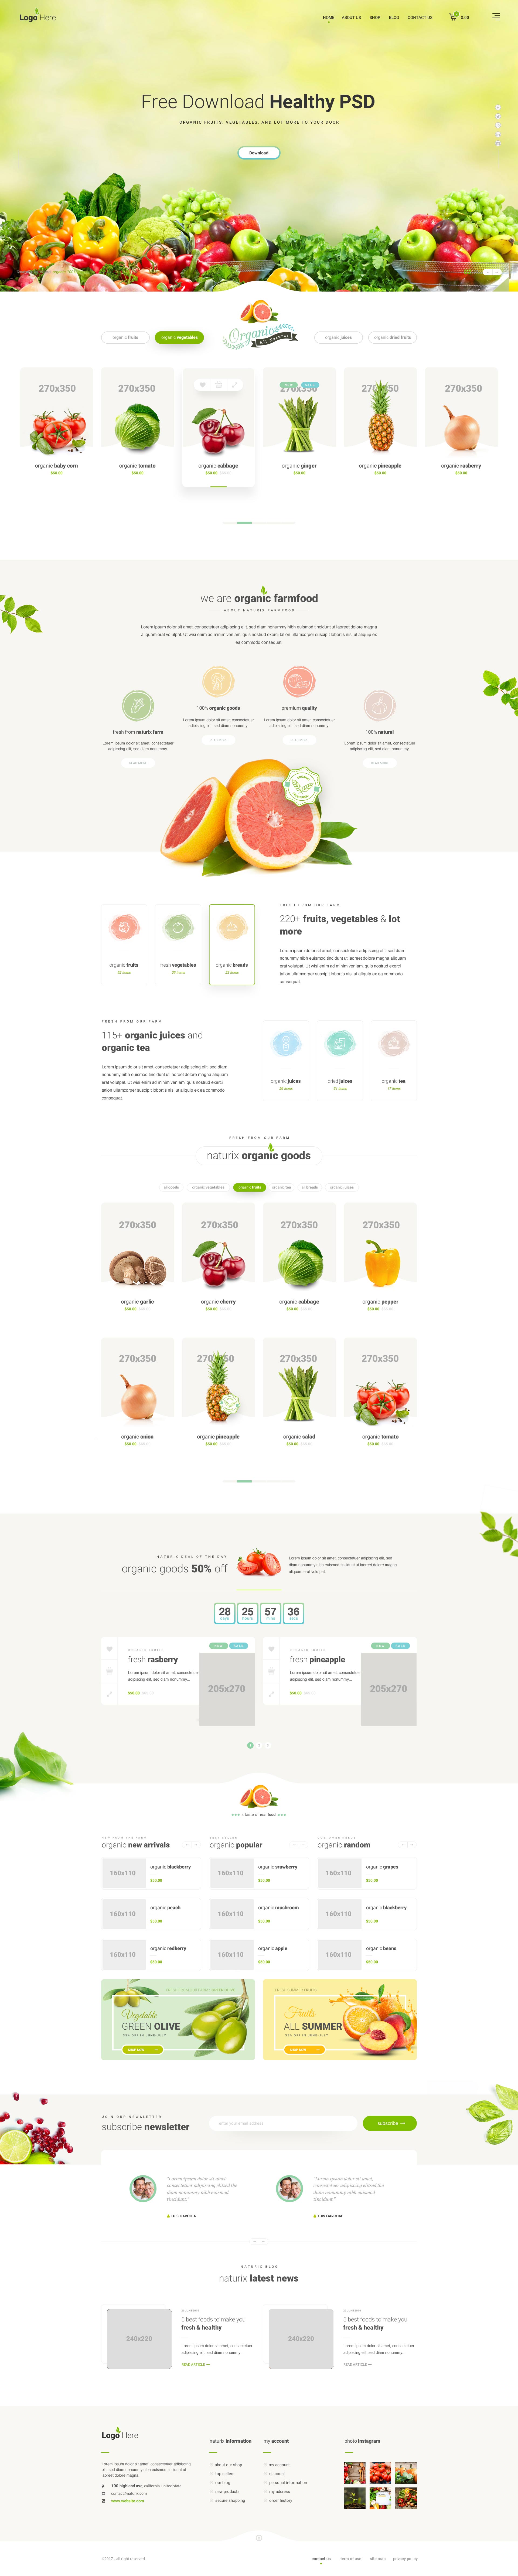 一个优雅的健康食品网站模板 Healthy Food Website Template插图